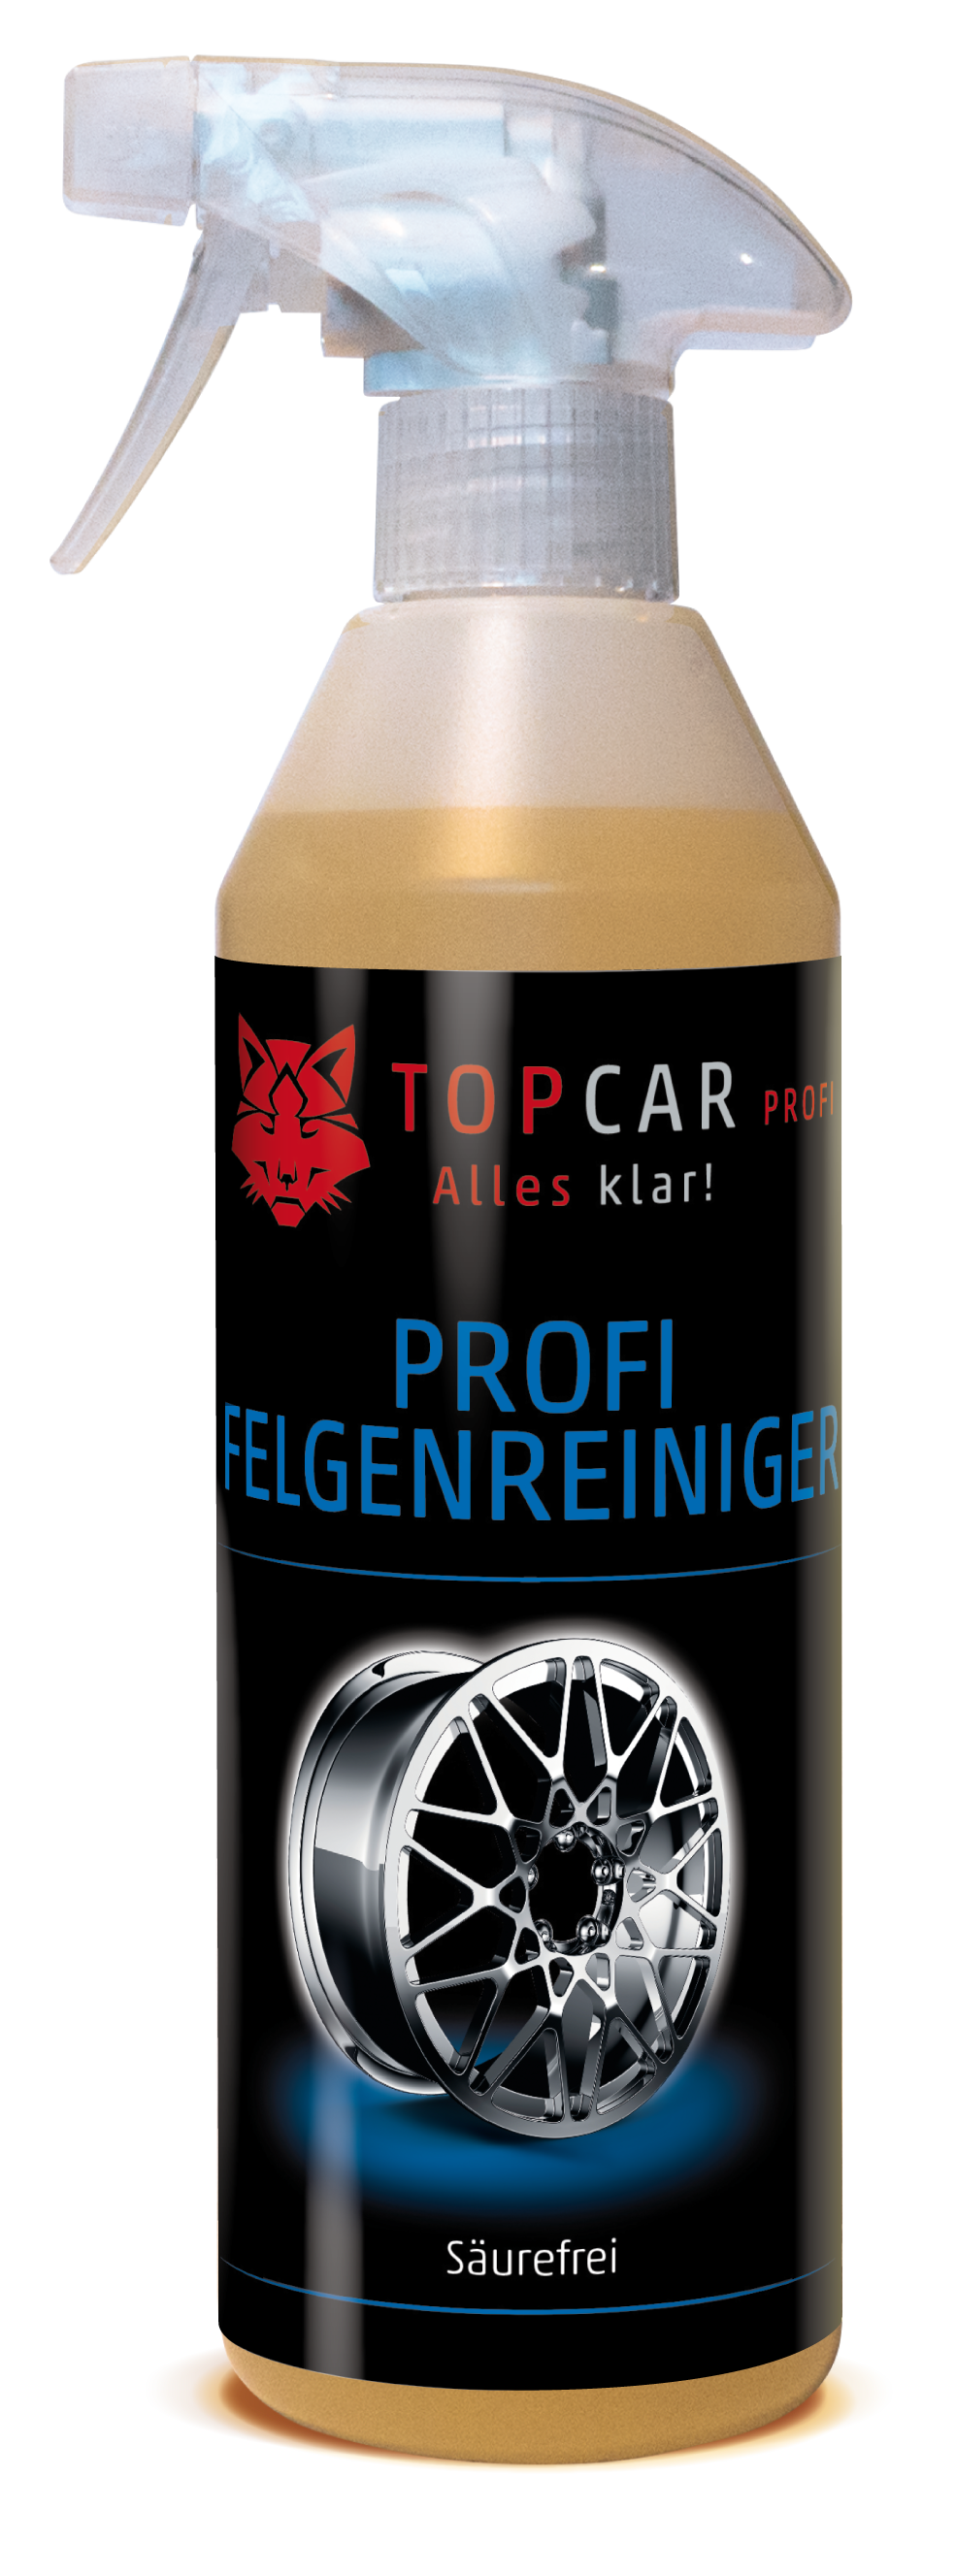 TOP CAR Felgenreiniger säurefrei 500ml Sprühflasche - Weigola Hygienevertrieb -  - Weigola Hygienevertrieb